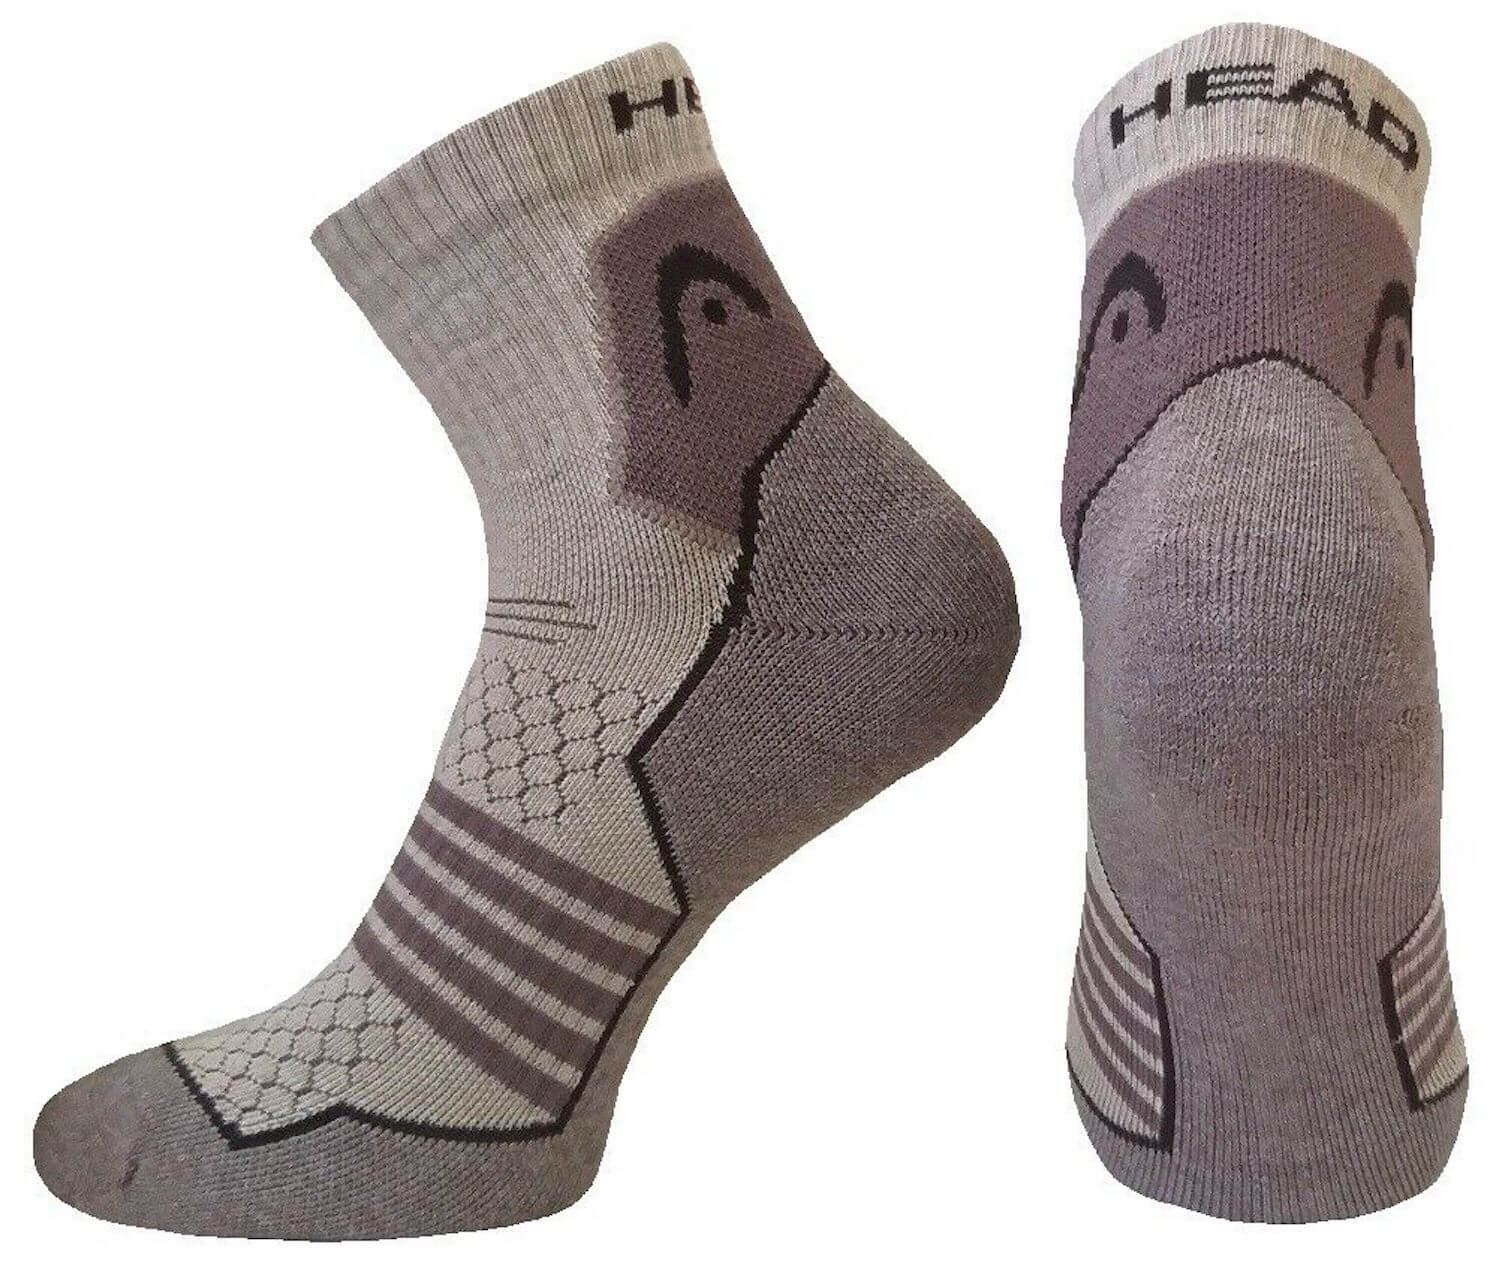 Socken für Trekking Wandern Outdoor Funktion Socke von Head mit Polsterung 4 Pack